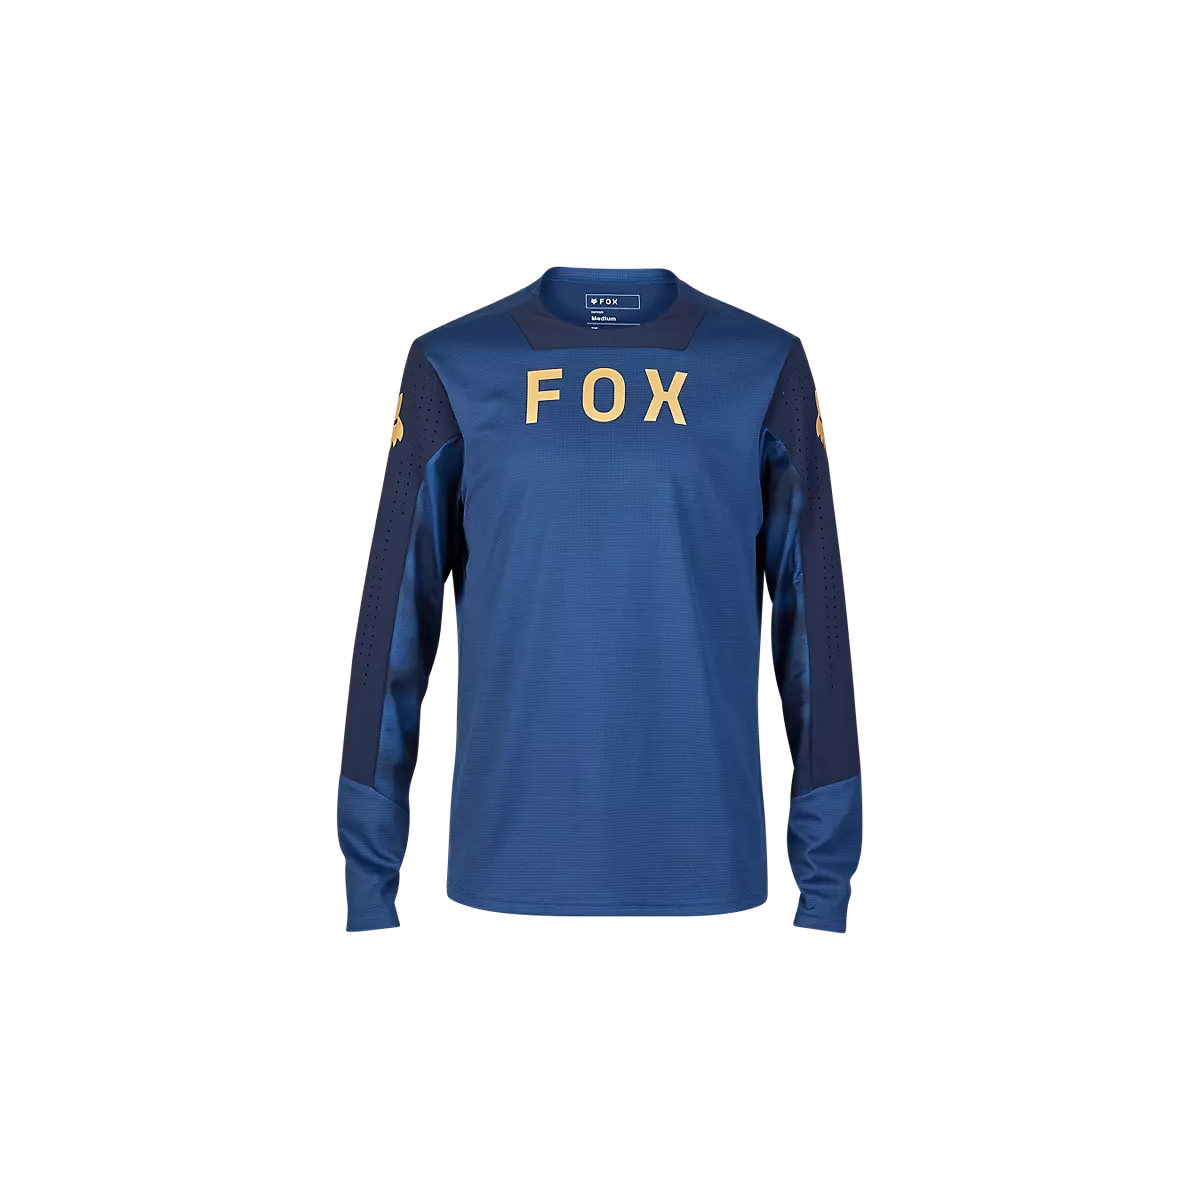 Camiseta manga larga Fox Defend TAUNT para mtb enduro, ebike o descenso|32369